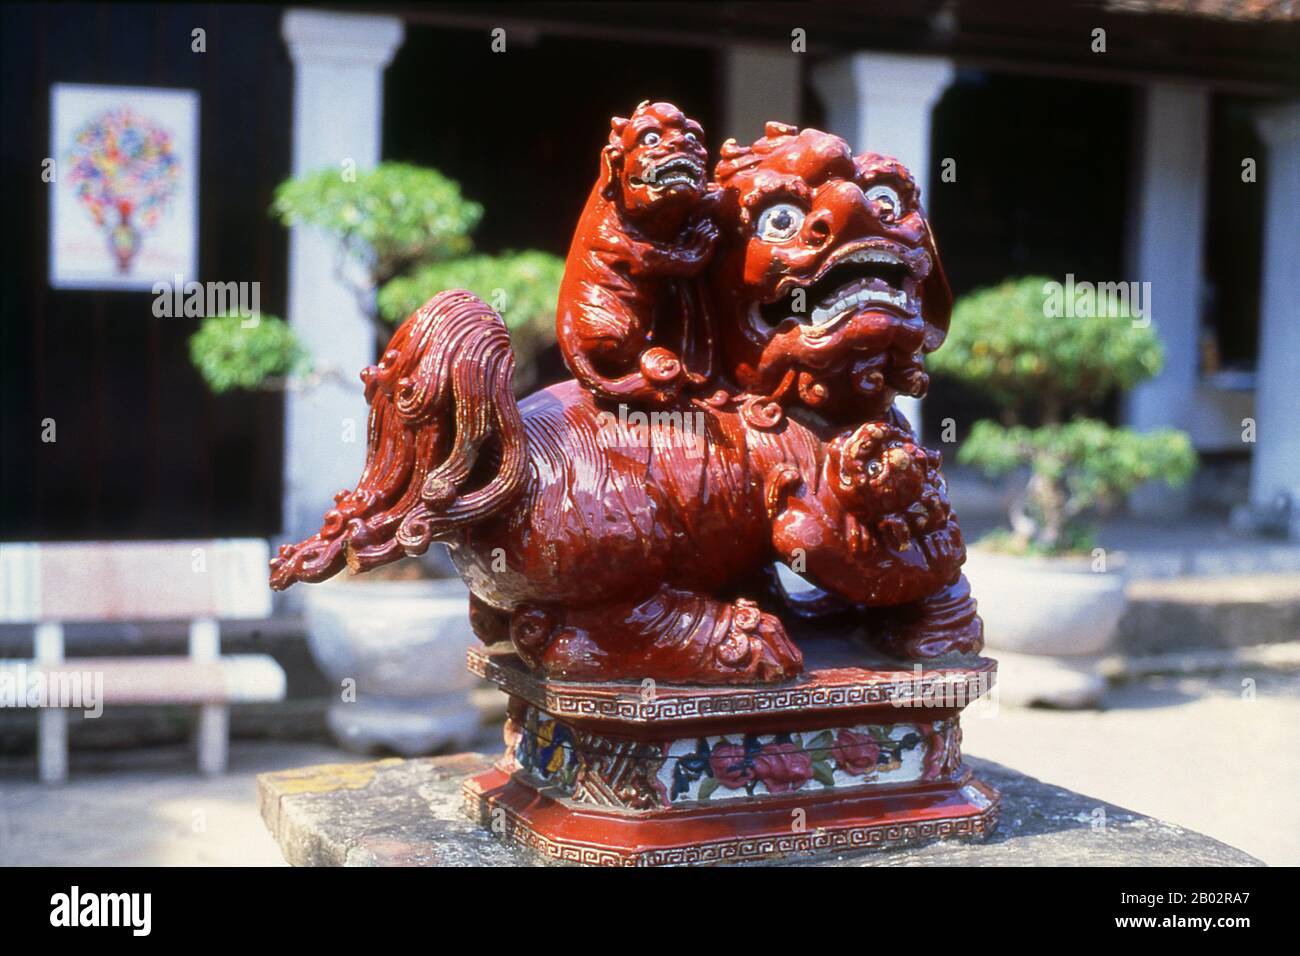 Le qilin, kirin ou kylin est une créature chimérique mythique à accrochage connue dans diverses cultures d'Asie de l'est, qui apparaît avec l'arrivée imminente ou le passage d'un sage ou d'un dirigeant illustrié. Il est souvent représenté avec ce qui ressemble au feu partout dans son corps. Il est parfois appelé « unicorn chinois » par rapport à Western unicorn. Le Temple de la littérature ou Van Mieu est l’un des trésors culturels les plus importants du Vietnam. Fondé en 1070 par le roi Ly Thanh Tong de la dynastie des premiers Ly, le temple était dédié à la fois à Confucius et à Chu Cong, membre de la royauté chinoise Banque D'Images